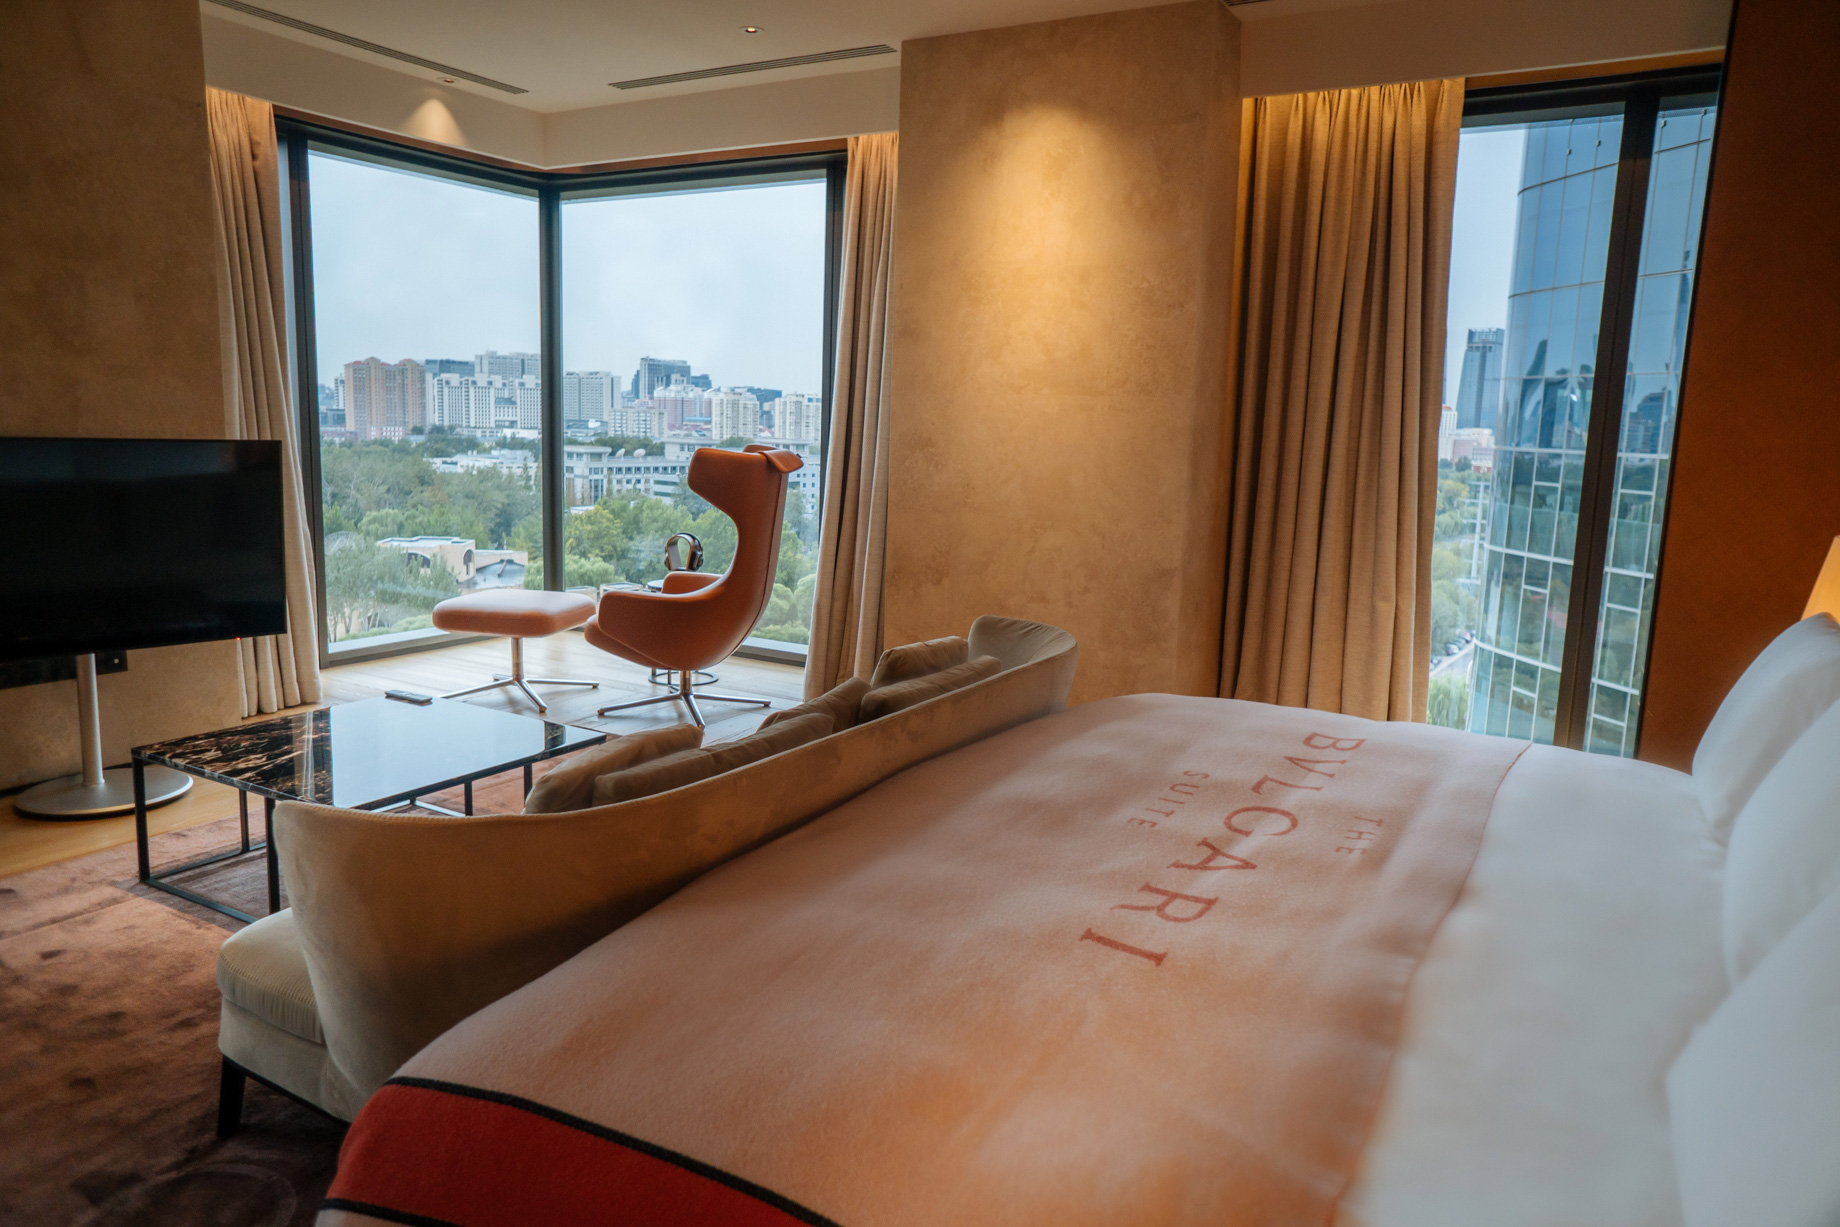 Bvlgari Hotel Beijing - Beijing, China - Bulgari Suite Bedroom